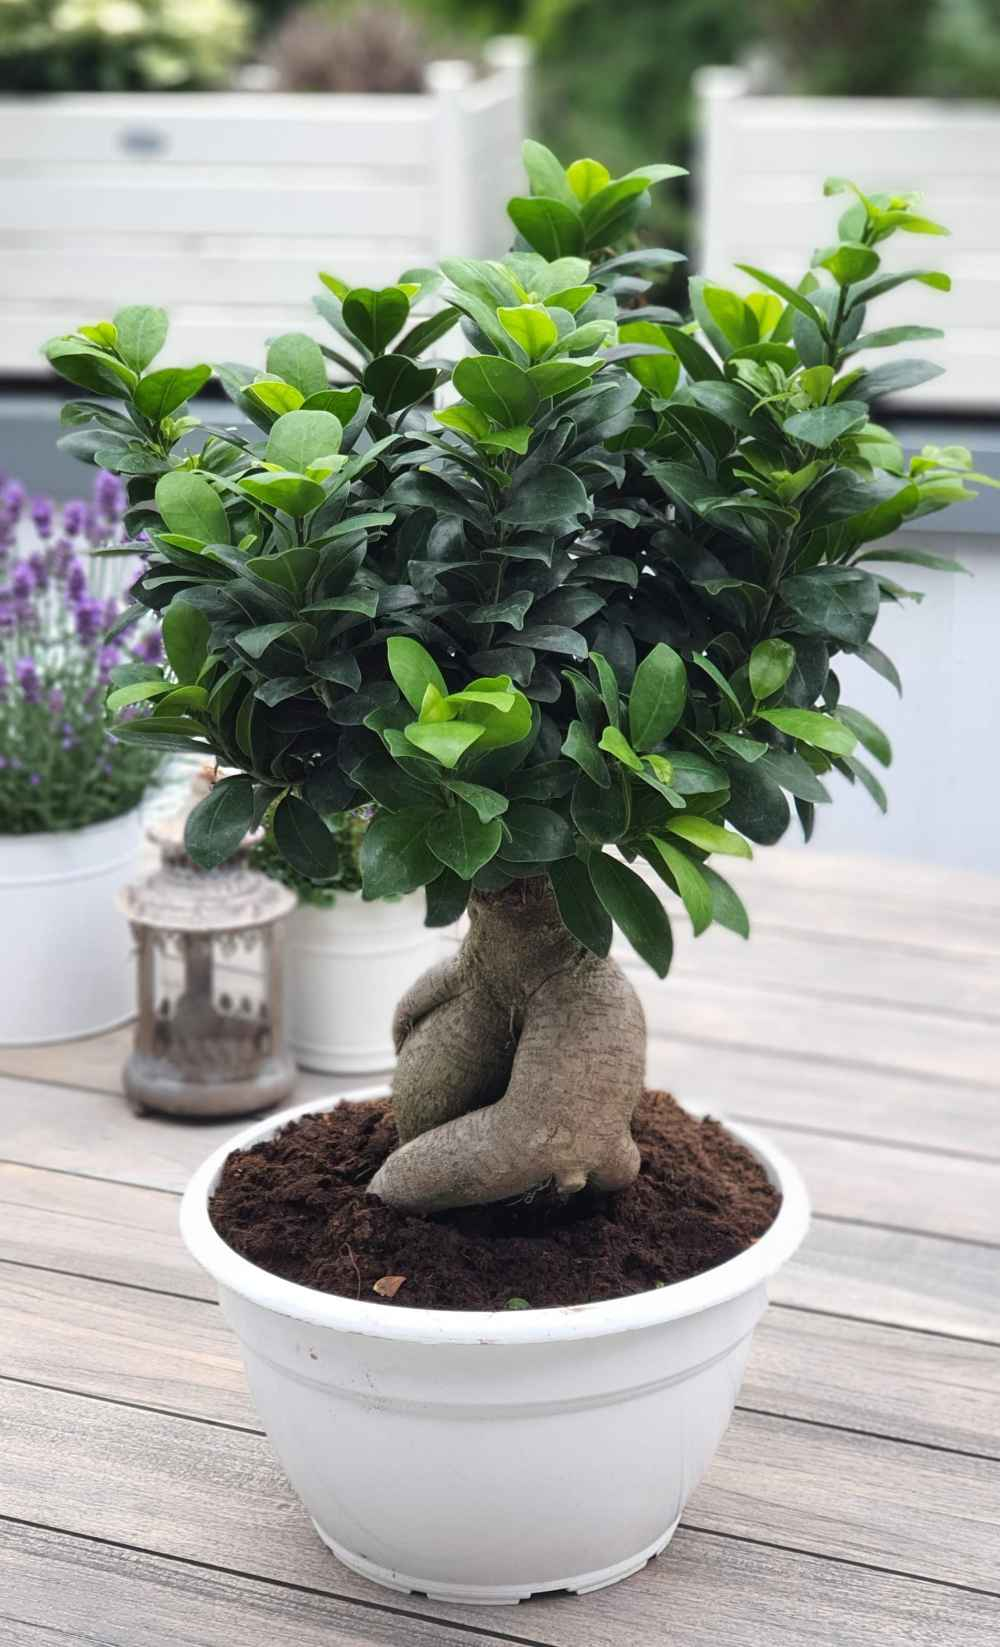 Bonsai "Ficus Ginseng" Mezzo - Ficus Microcarpa - Chinesischer Feigenbaum  - Bonsaipflanze für drinnen und draußen - Lorbeerfeige - Ficus Retusa